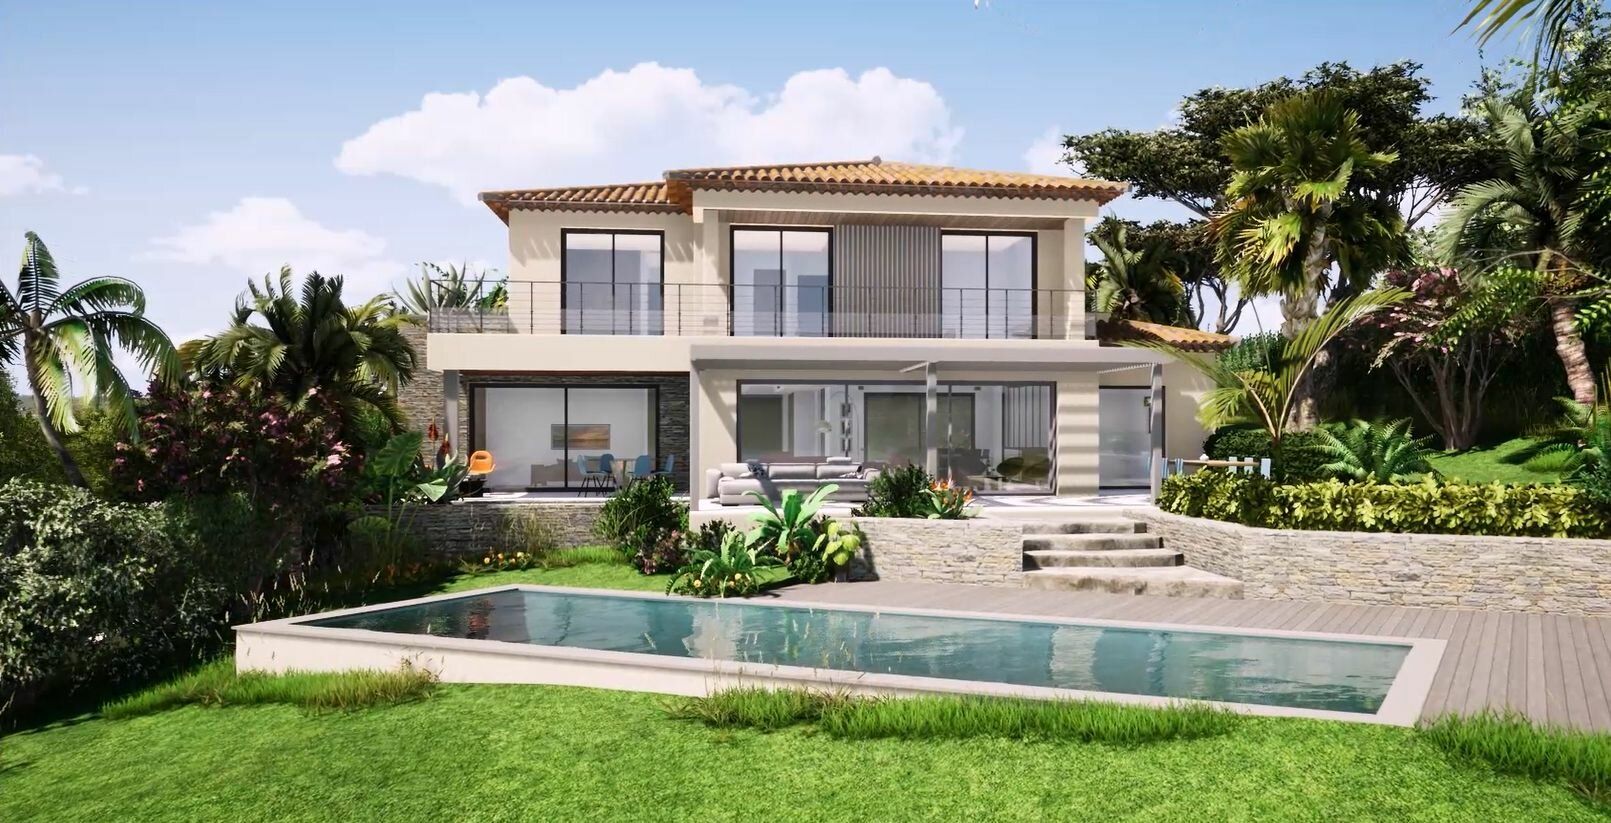 Maison à vendre 6 330m2 à Sainte-Maxime vignette-2